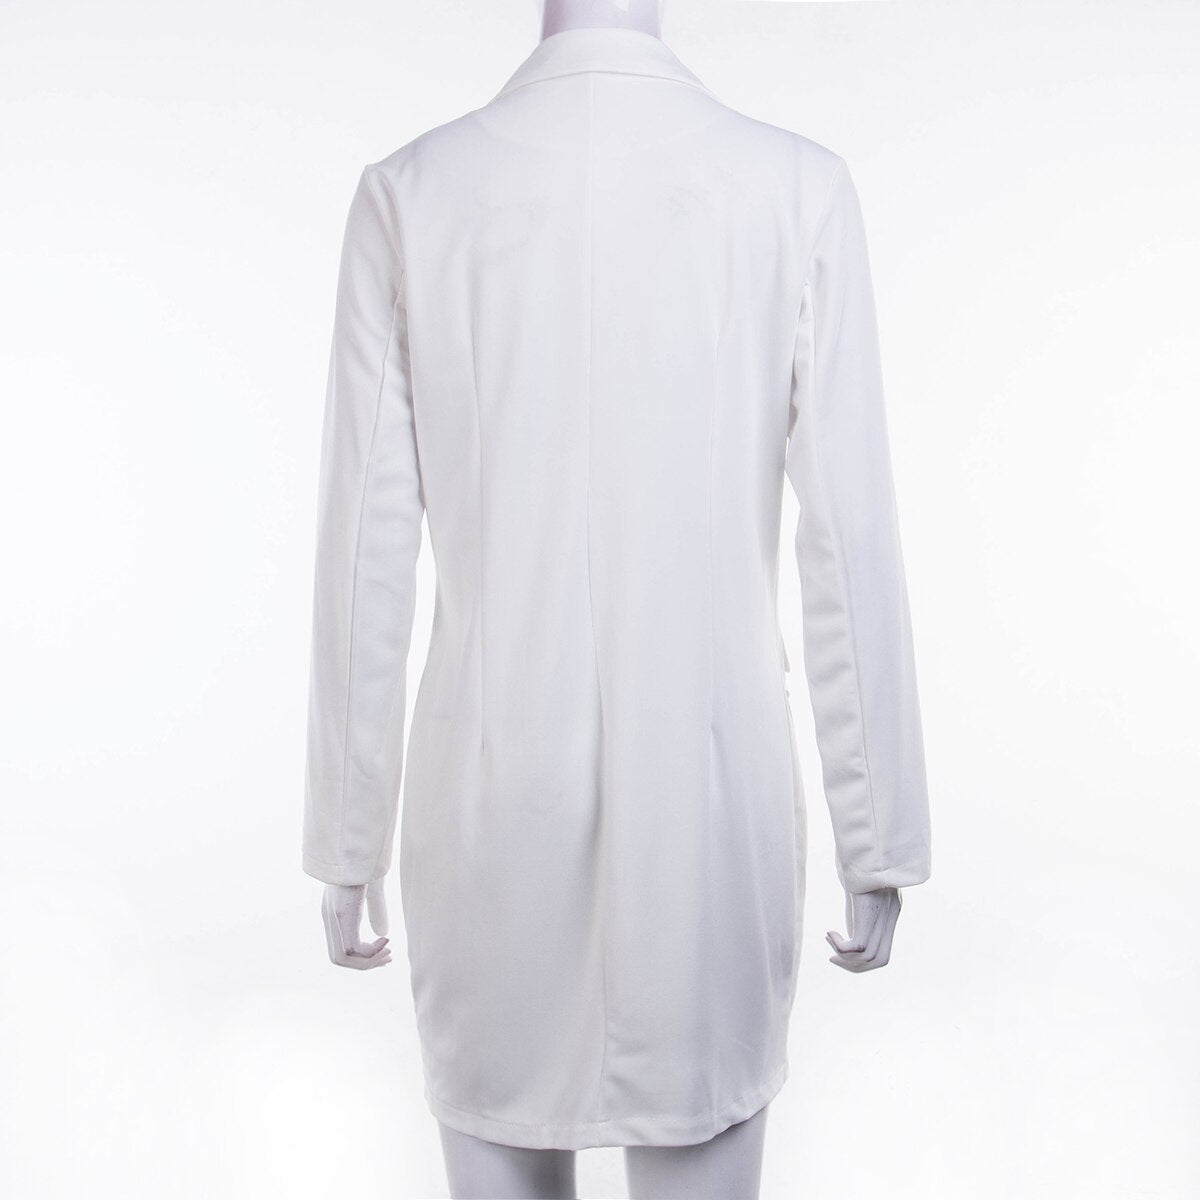 Elegant Office Casual Blazer White/Black Dress 2023 Spring Summer